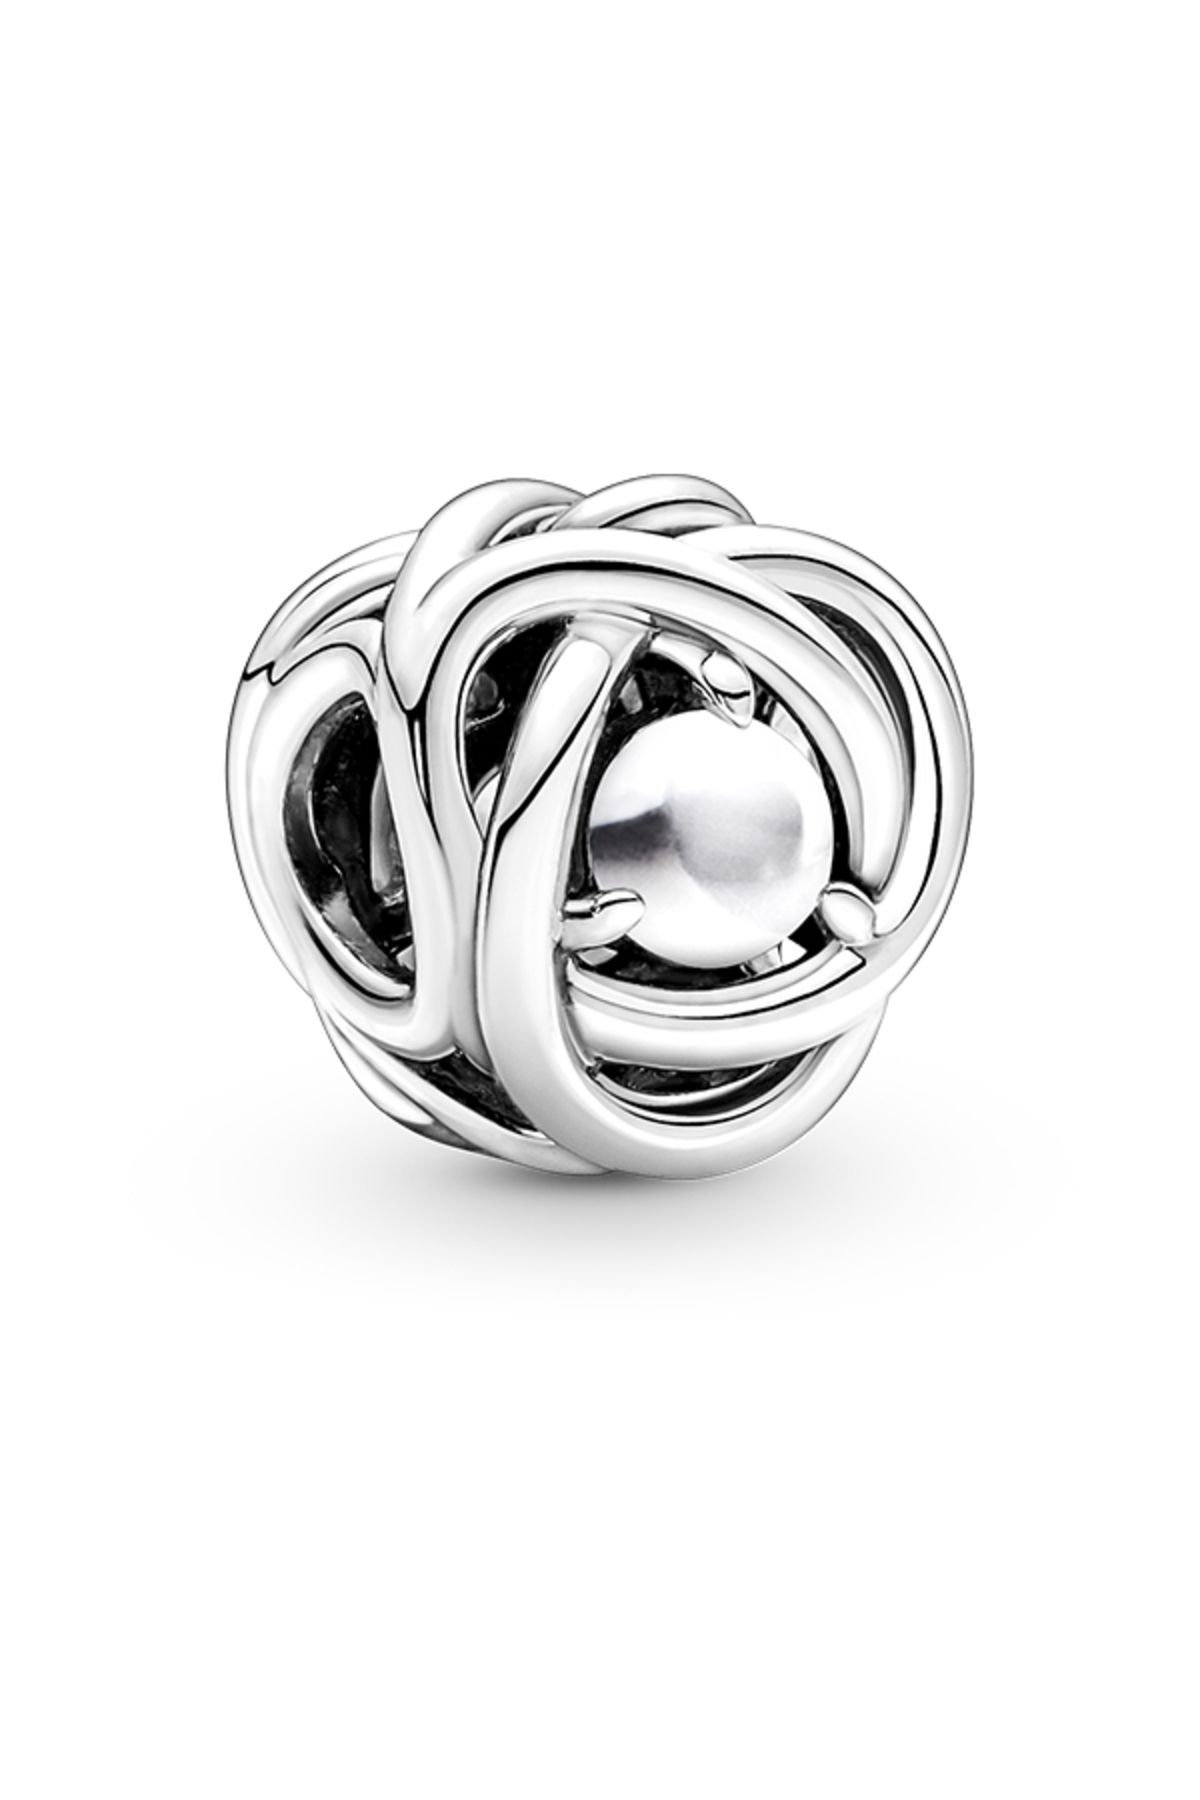 Pandora Beyaz bioresin insan yapımı sedefli 925 ayar gümüş charm